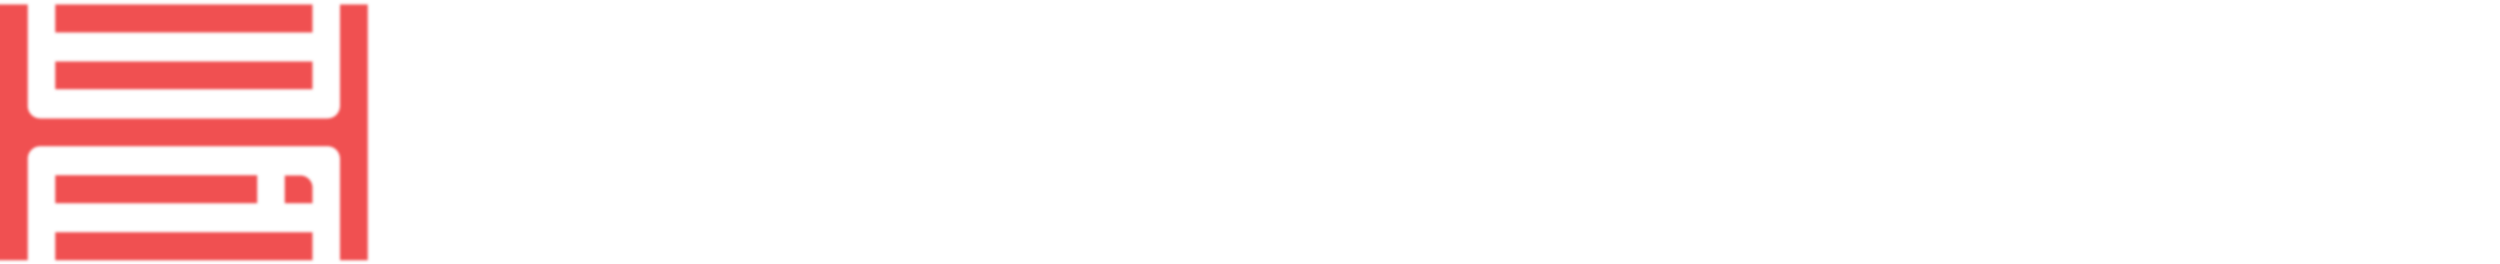 Hosterium Logo